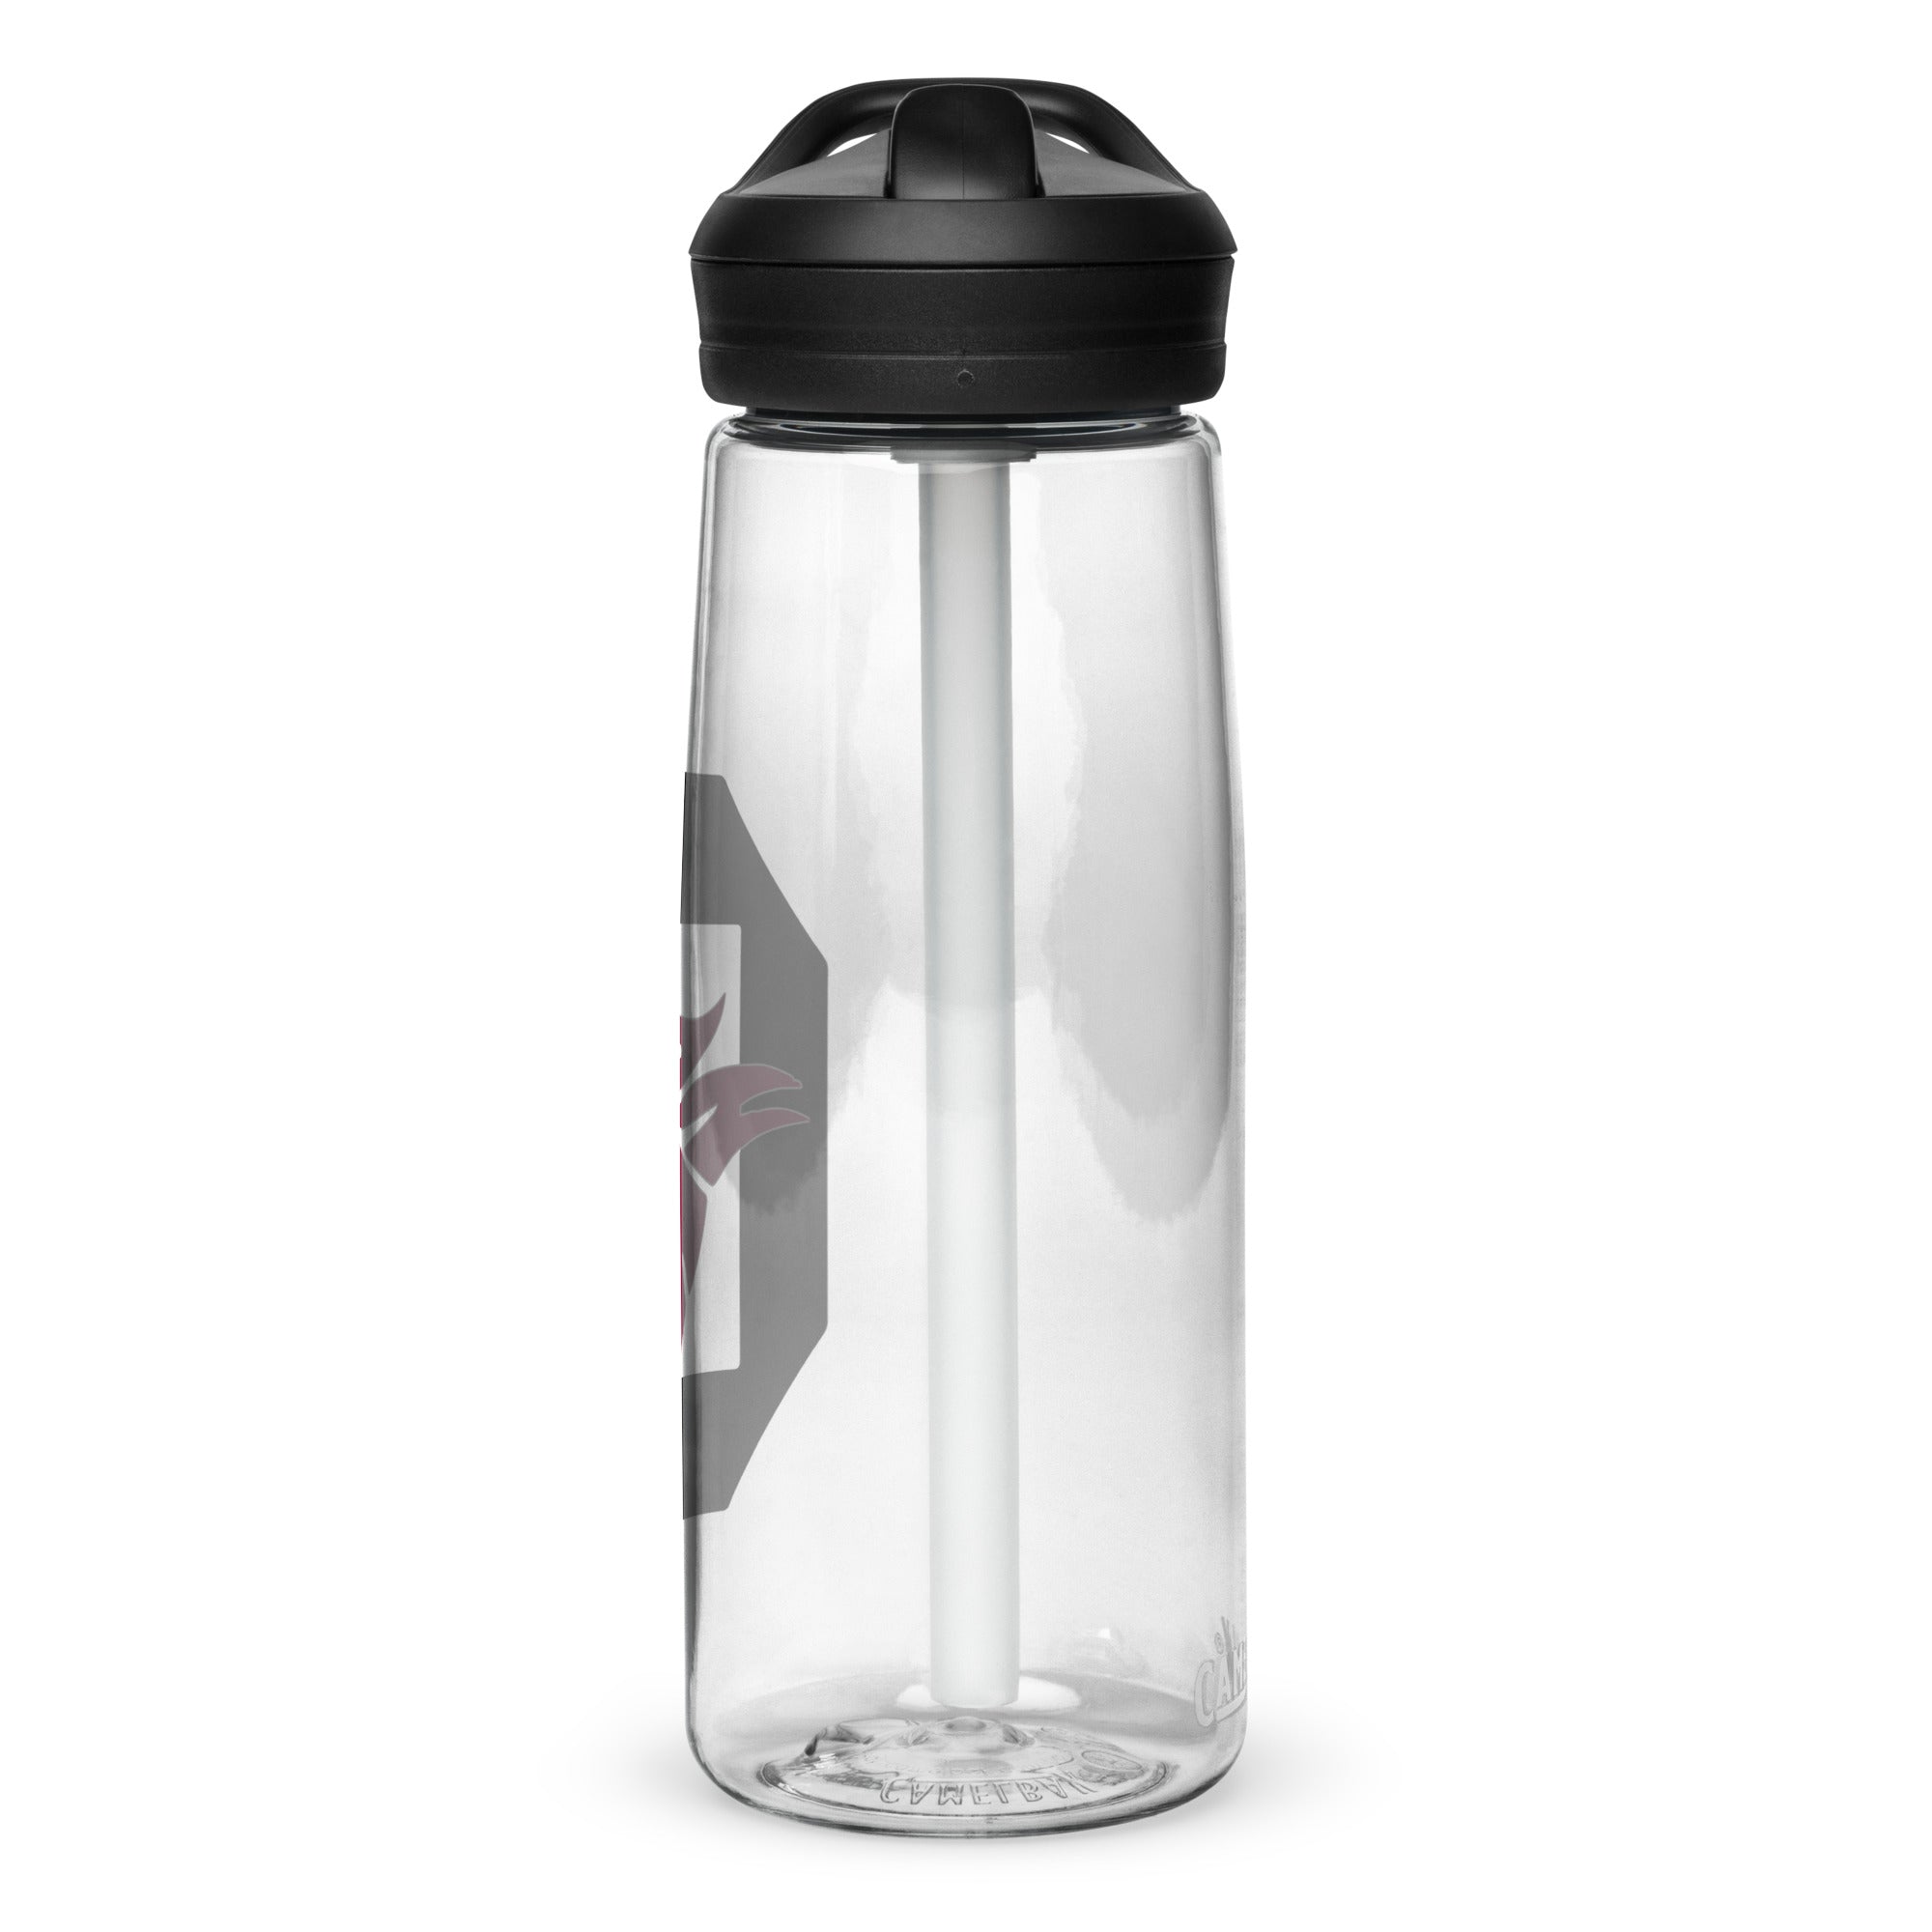 CB Sports water bottle